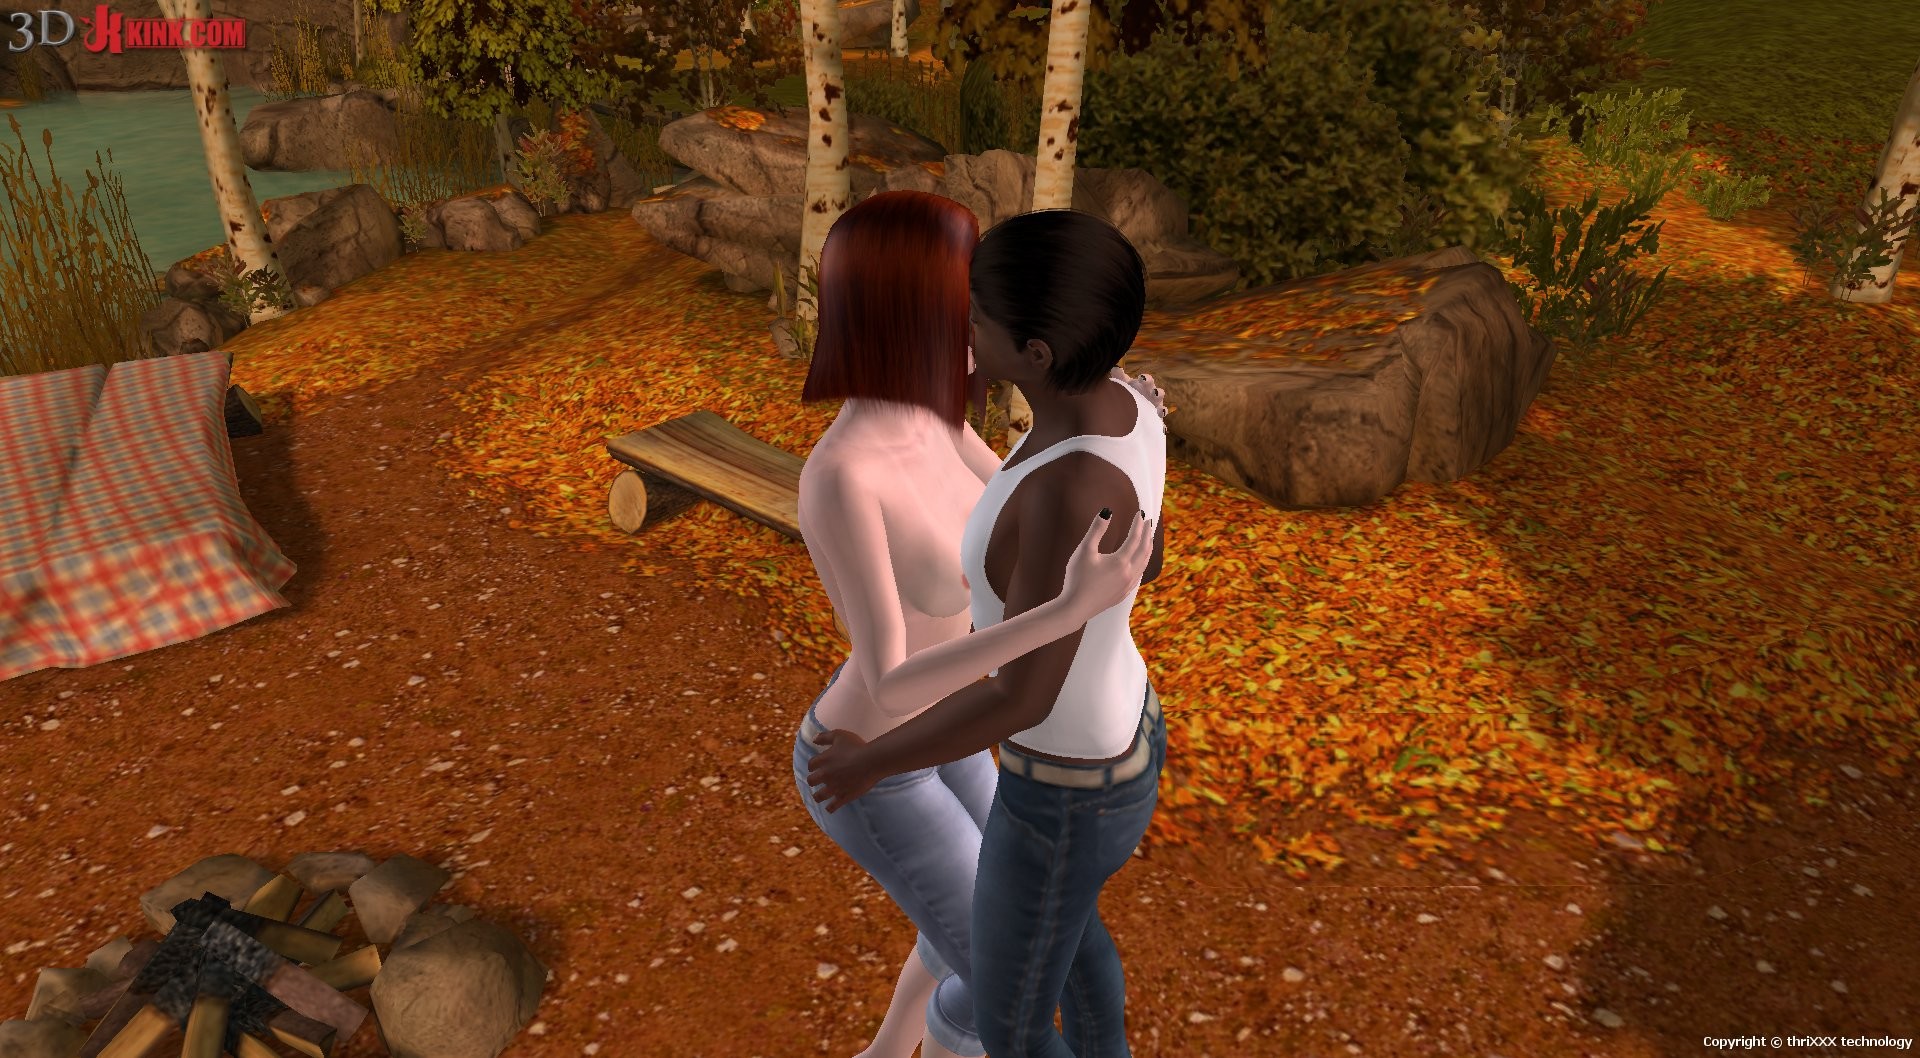 Acción sexual interracial creada en un juego de sexo virtual fetichista en 3D.
 #69360076